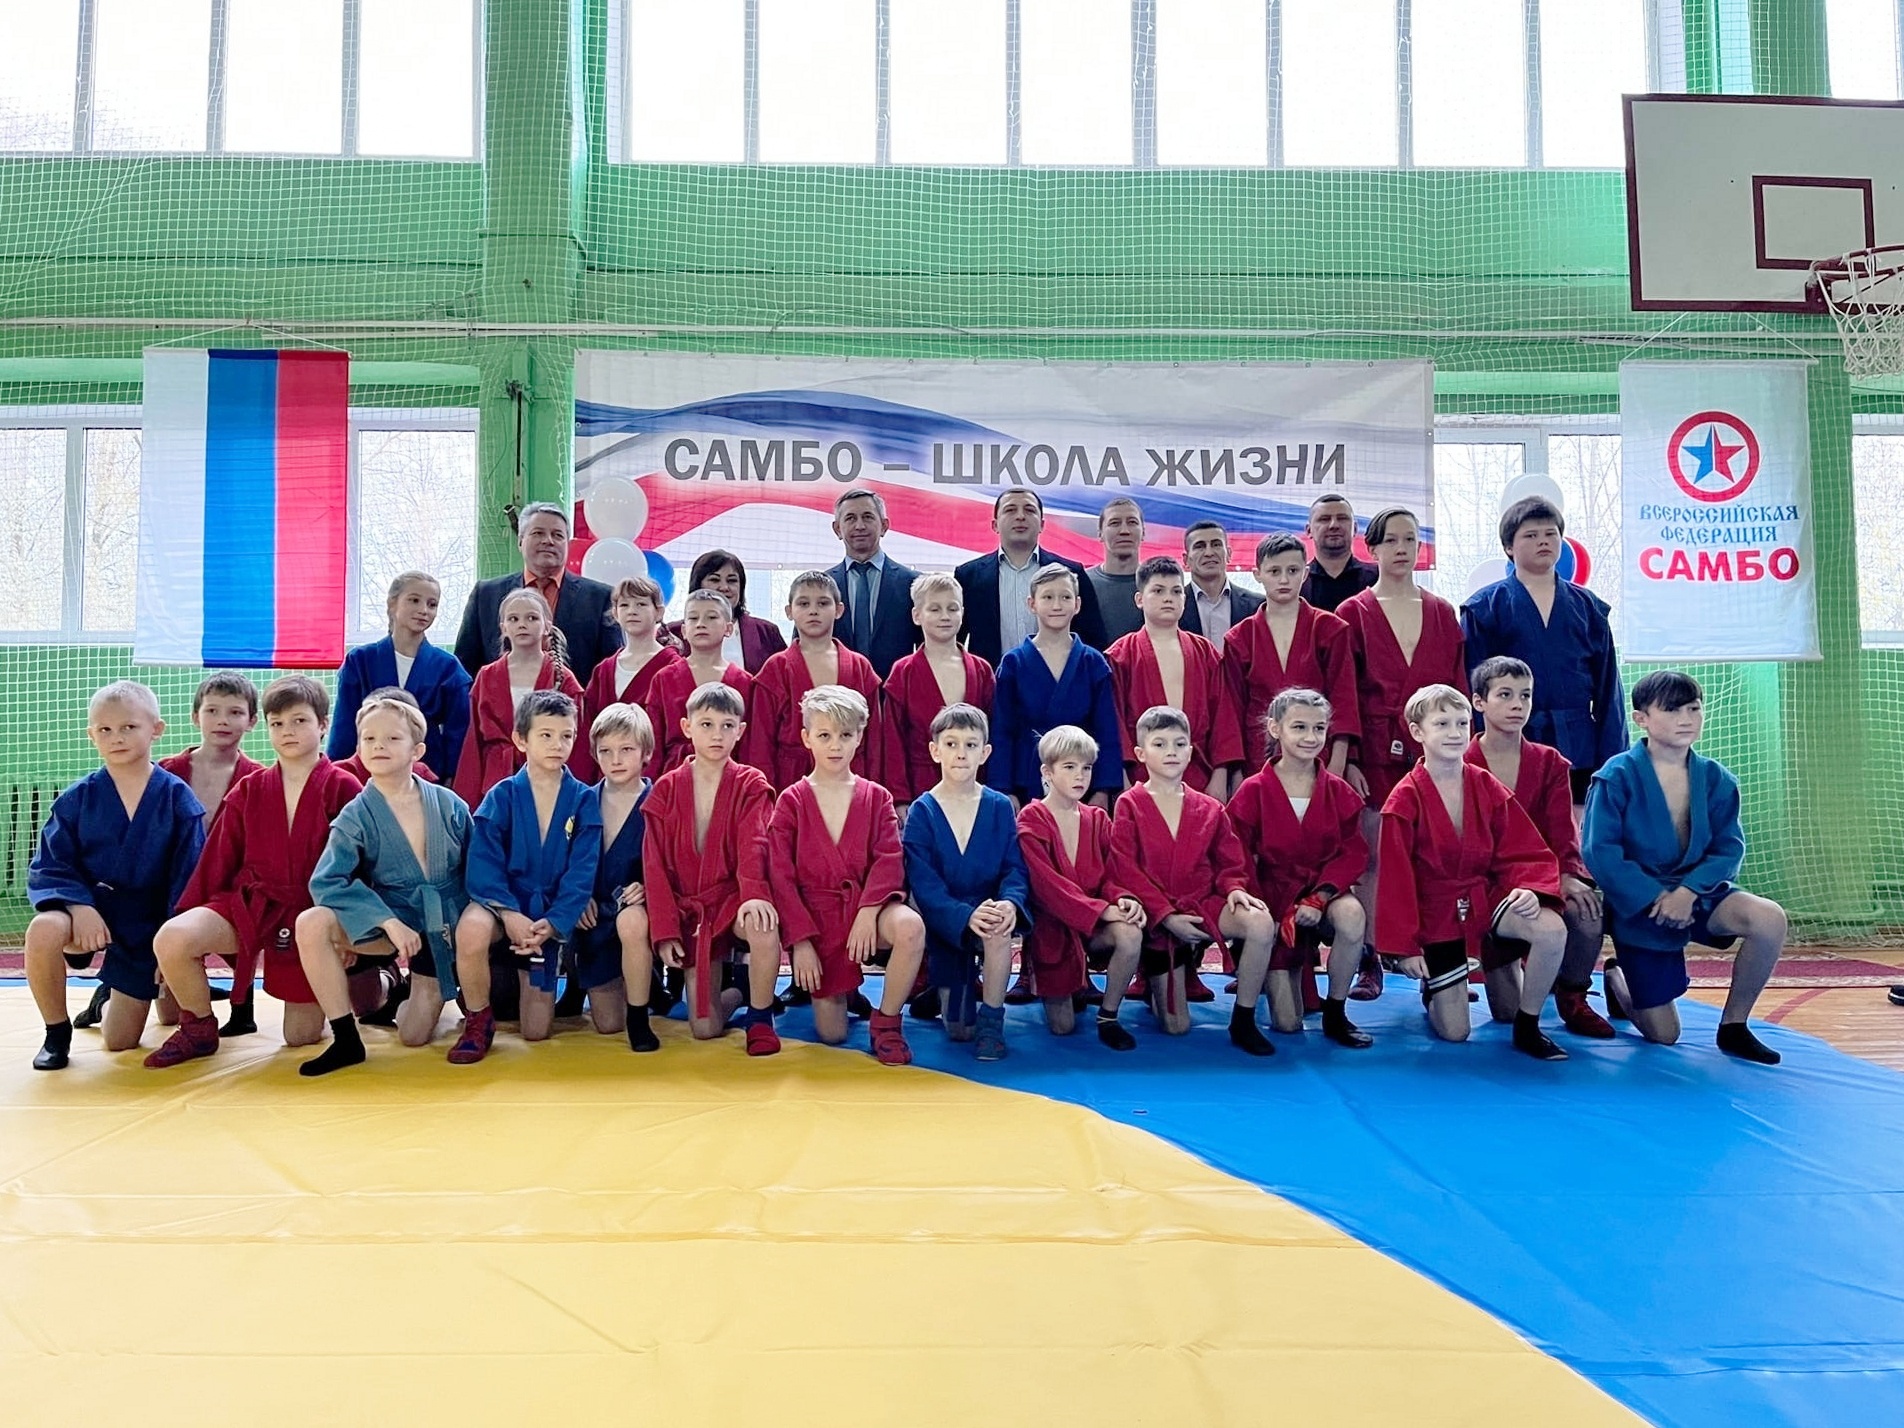 Образовательное учреждение Ярославской области включилось в проект «Самбо в школу»